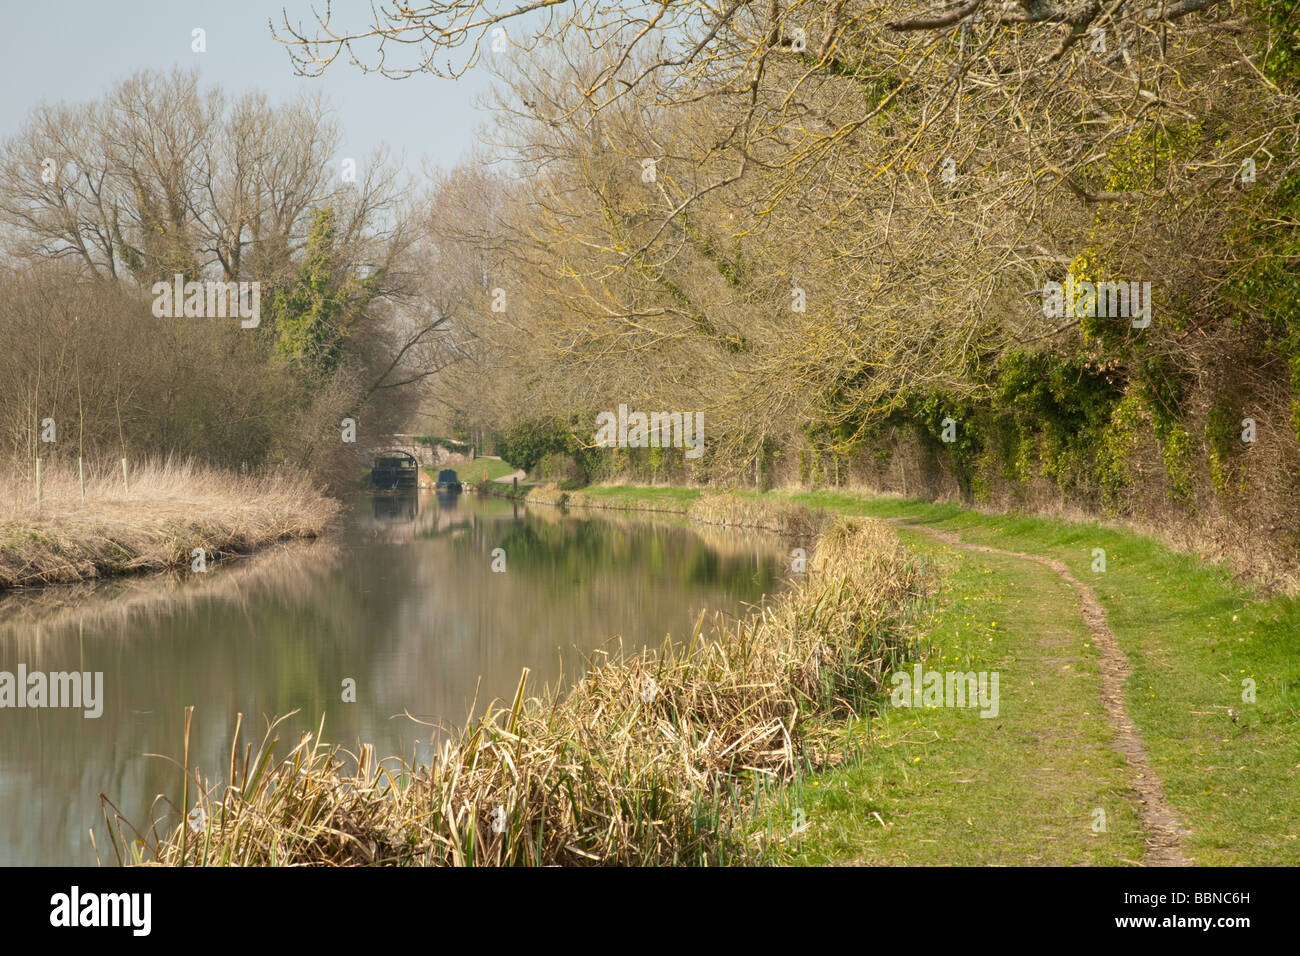 Serrure sur le Kennet and Avon Canal près de Avington entre Hungerford et Kintbury Berkshire Uk Banque D'Images